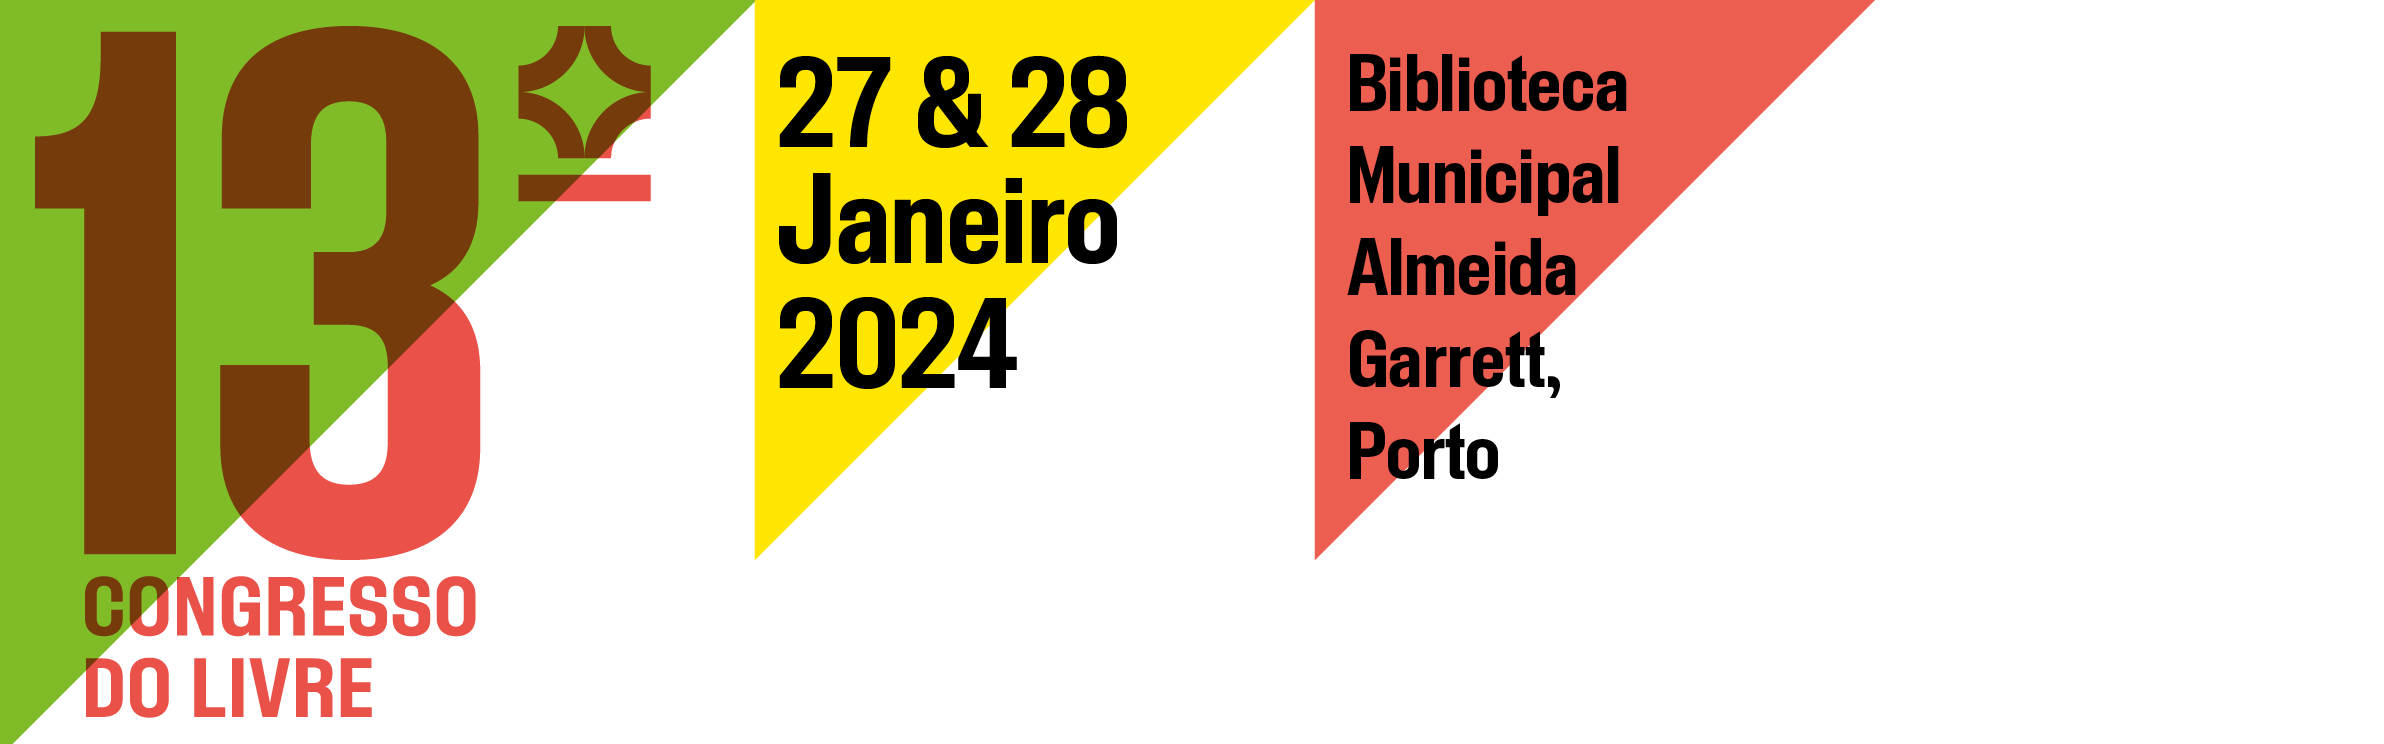 13.º Congresso do LIVRE 27 e 28 de janeiro de 2024 Biblioteca Municipal Almeida Garrett, Porto